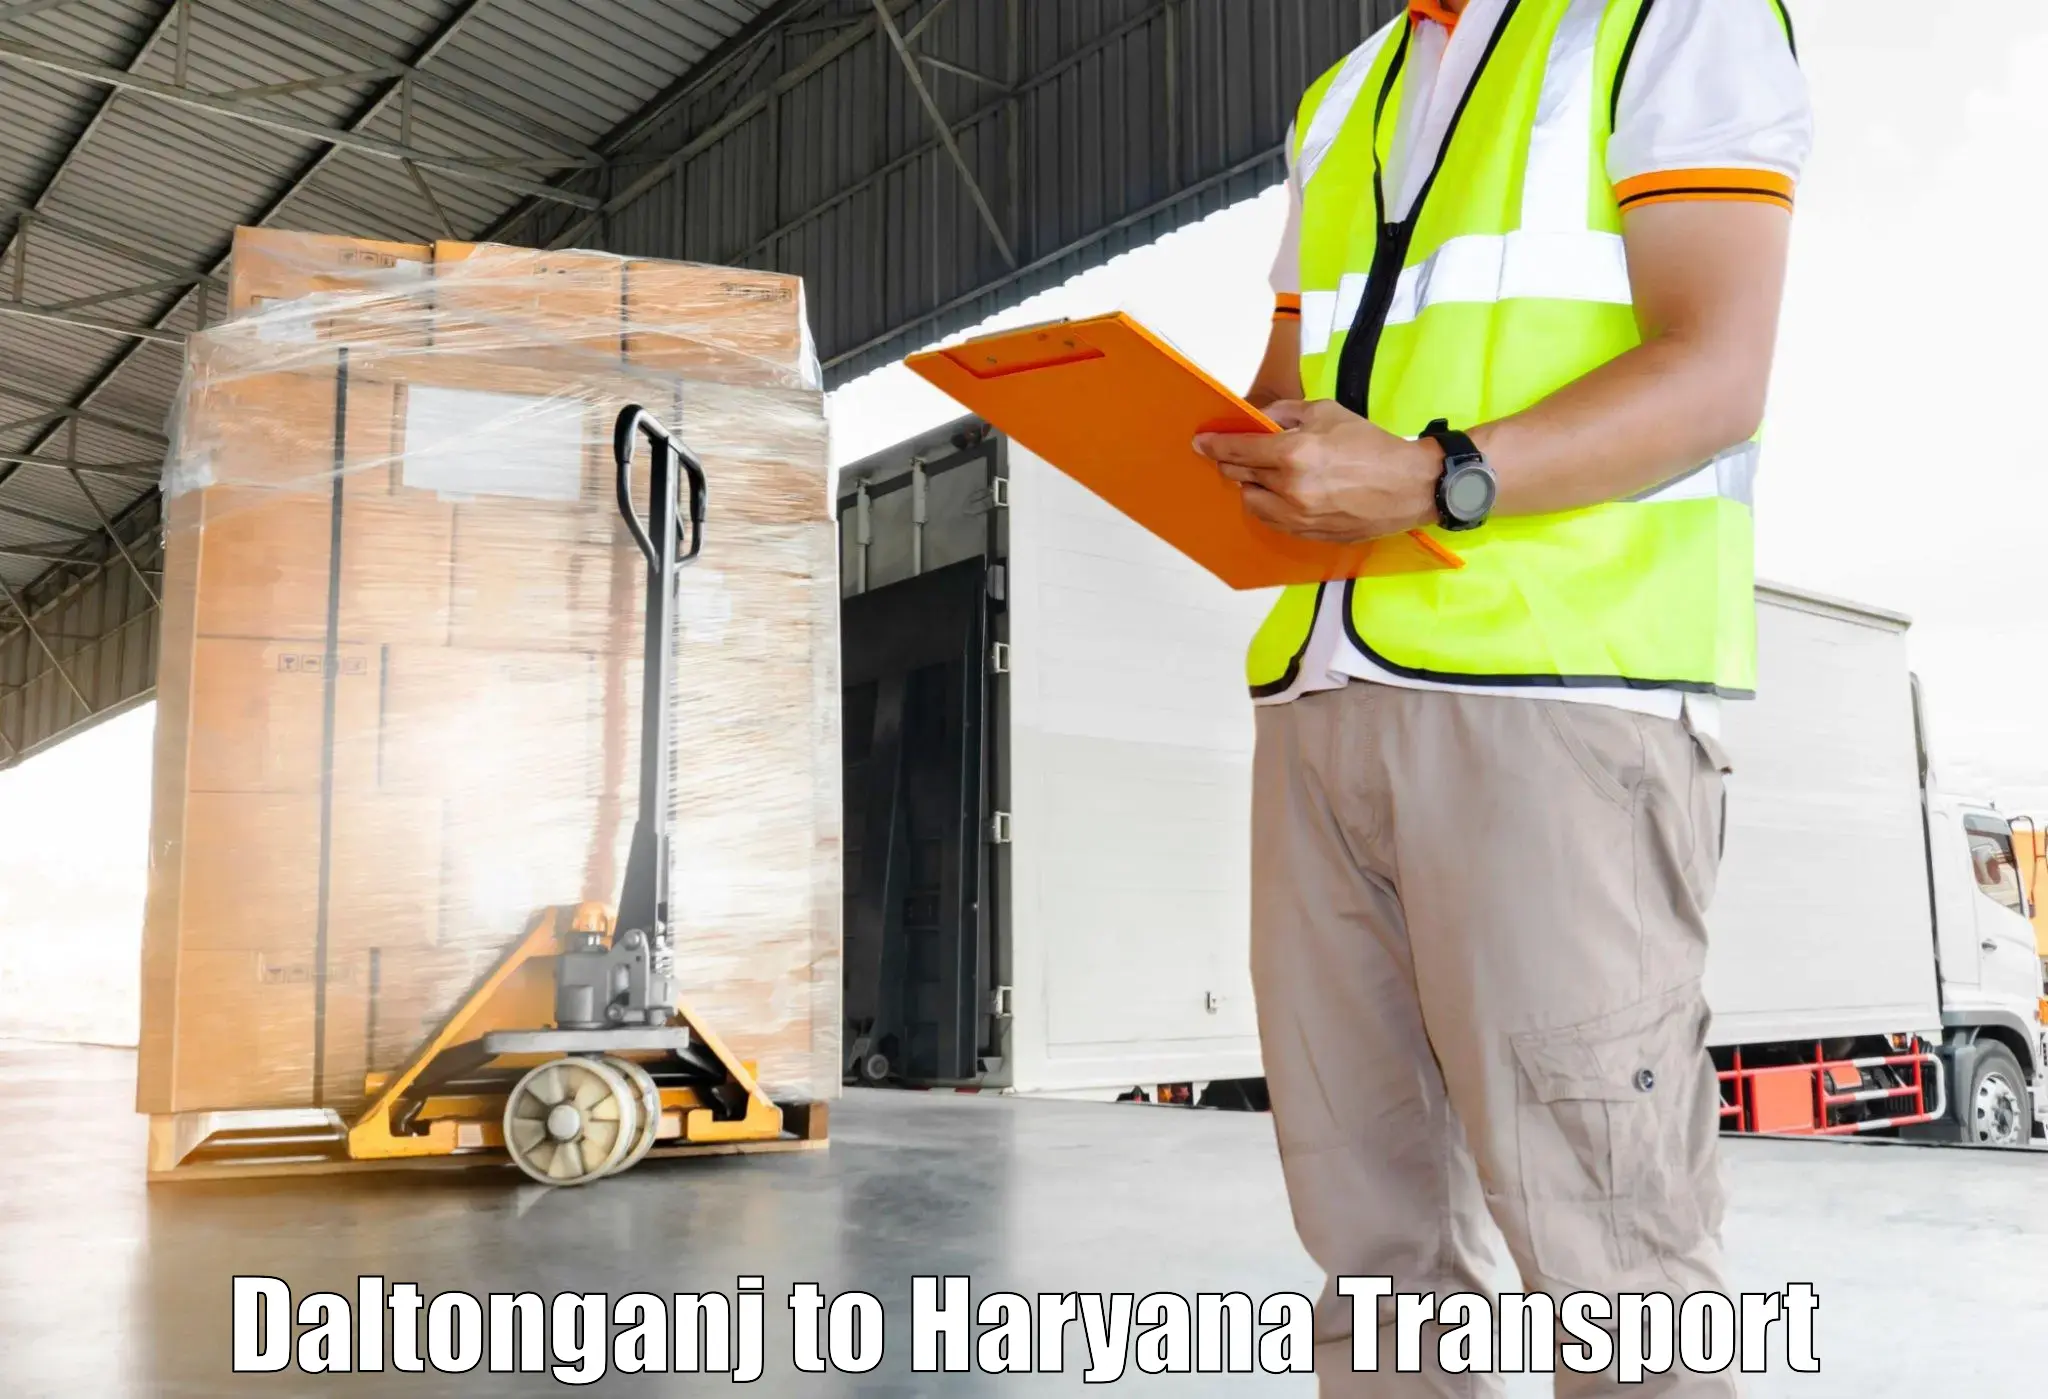 All India transport service Daltonganj to Chaudhary Charan Singh Haryana Agricultural University Hisar